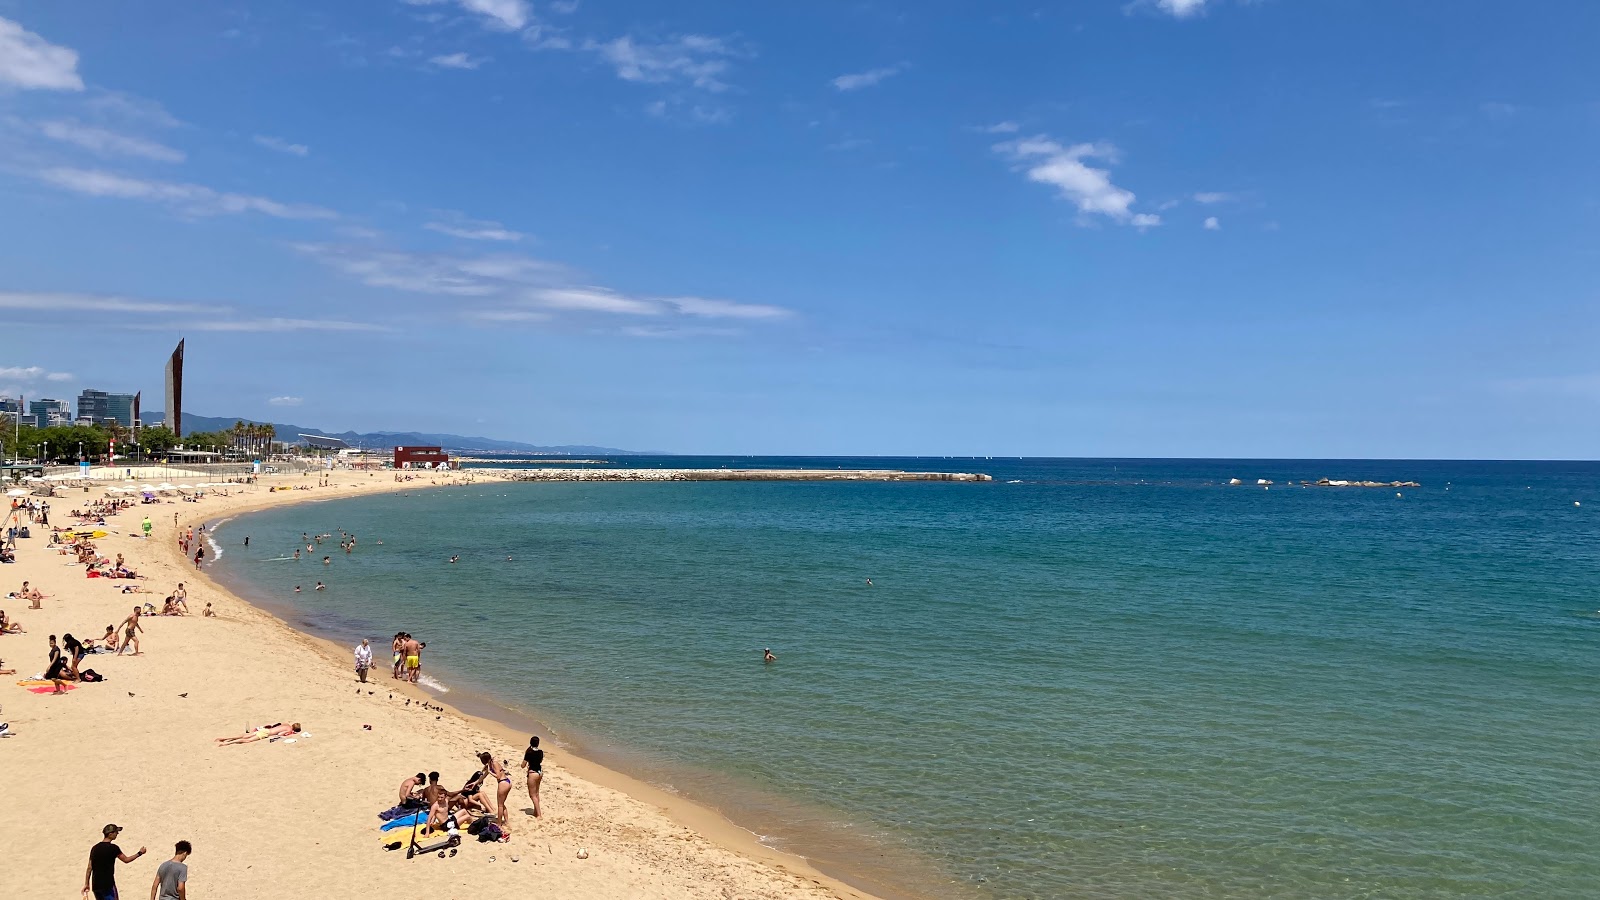 Fotografie cu Playa Barcelona - locul popular printre cunoscătorii de relaxare